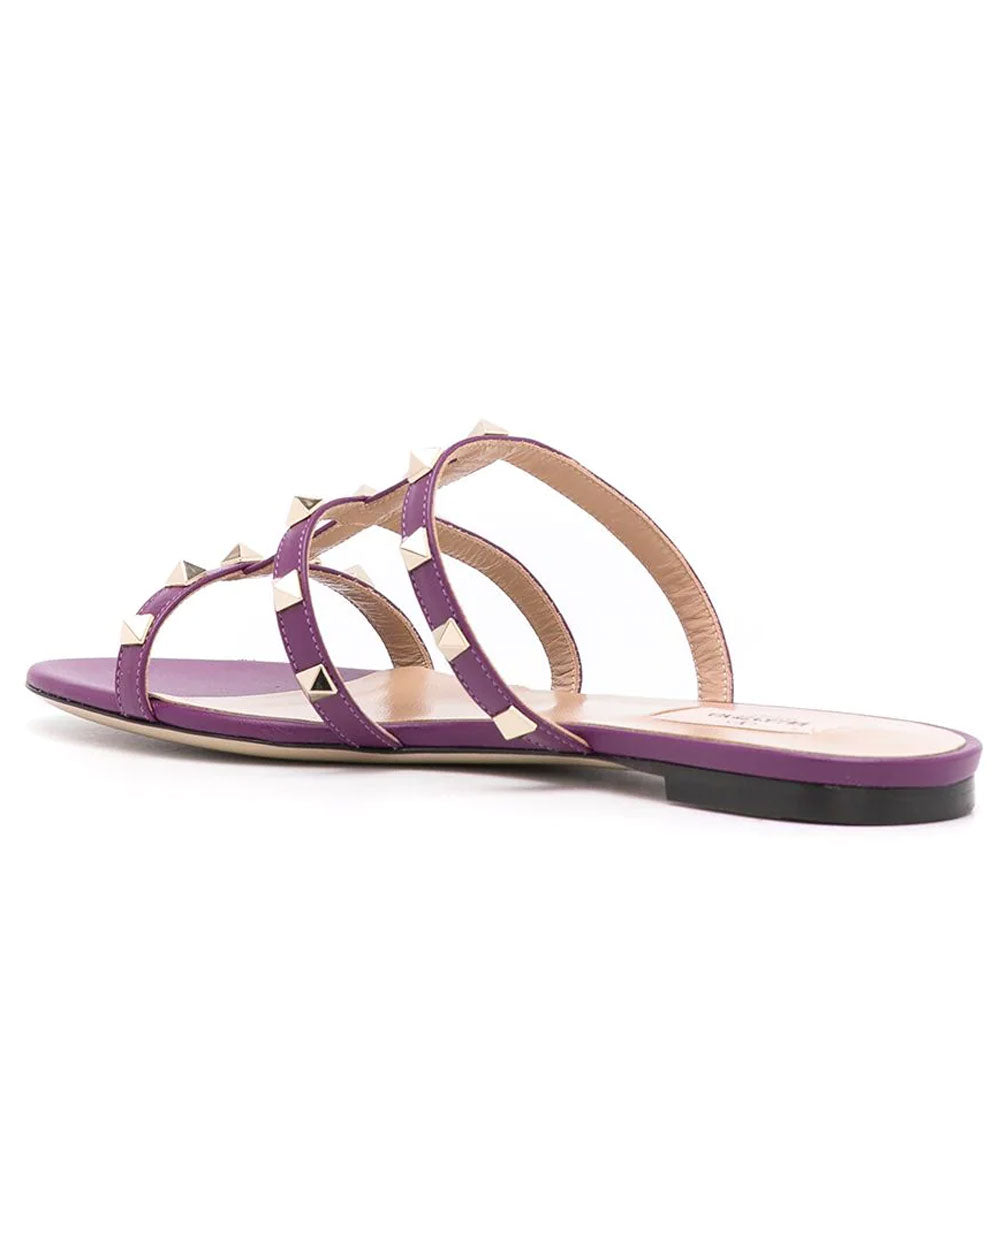 Rockstud Slide Sandal in Indian Violet